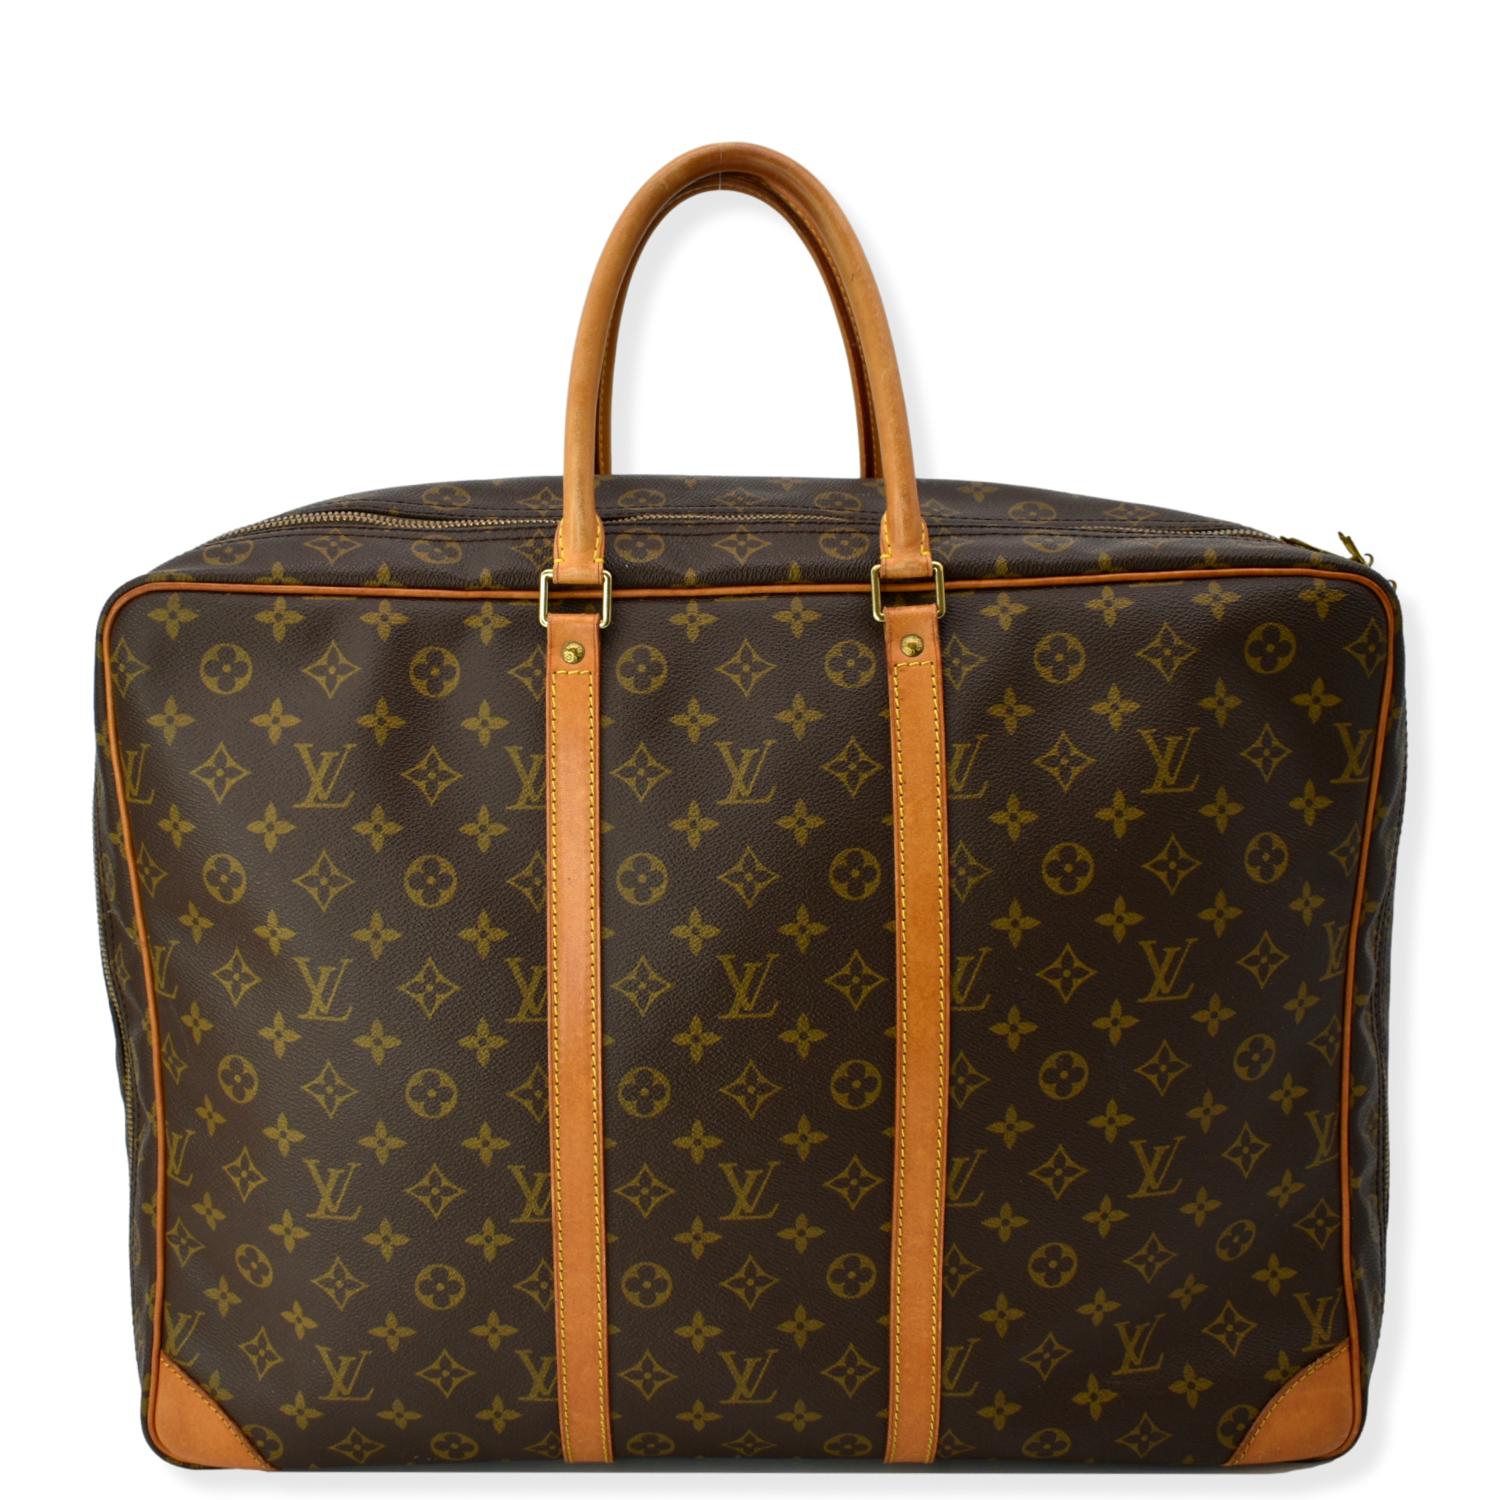 Louis Vuitton - Sirius 50 - Travel bag - Catawiki